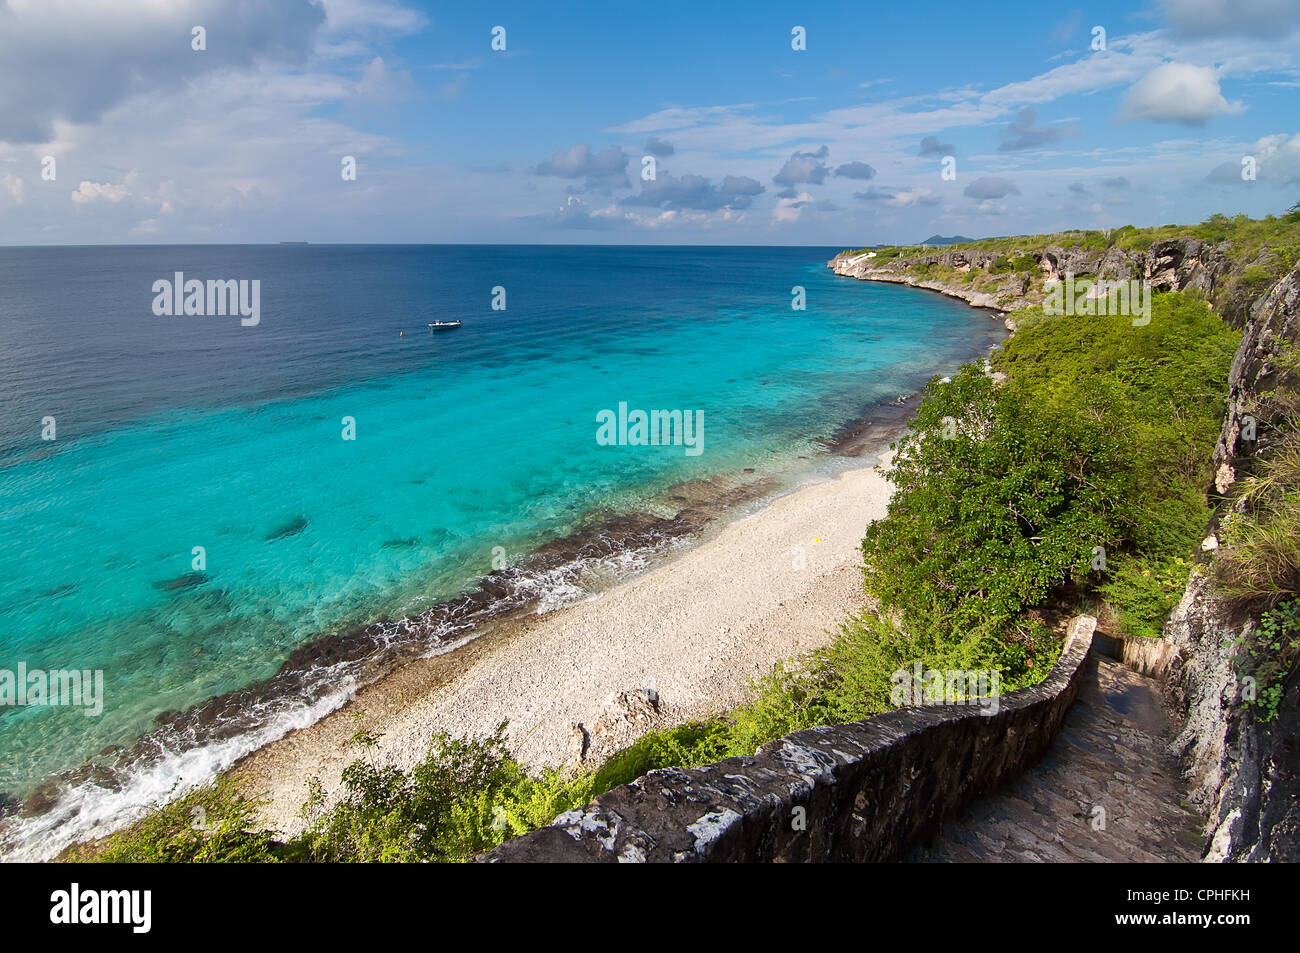 Ein Wahrzeichen Lage auf Bonaire, niederländische Сaribbean Insel. Stockfoto